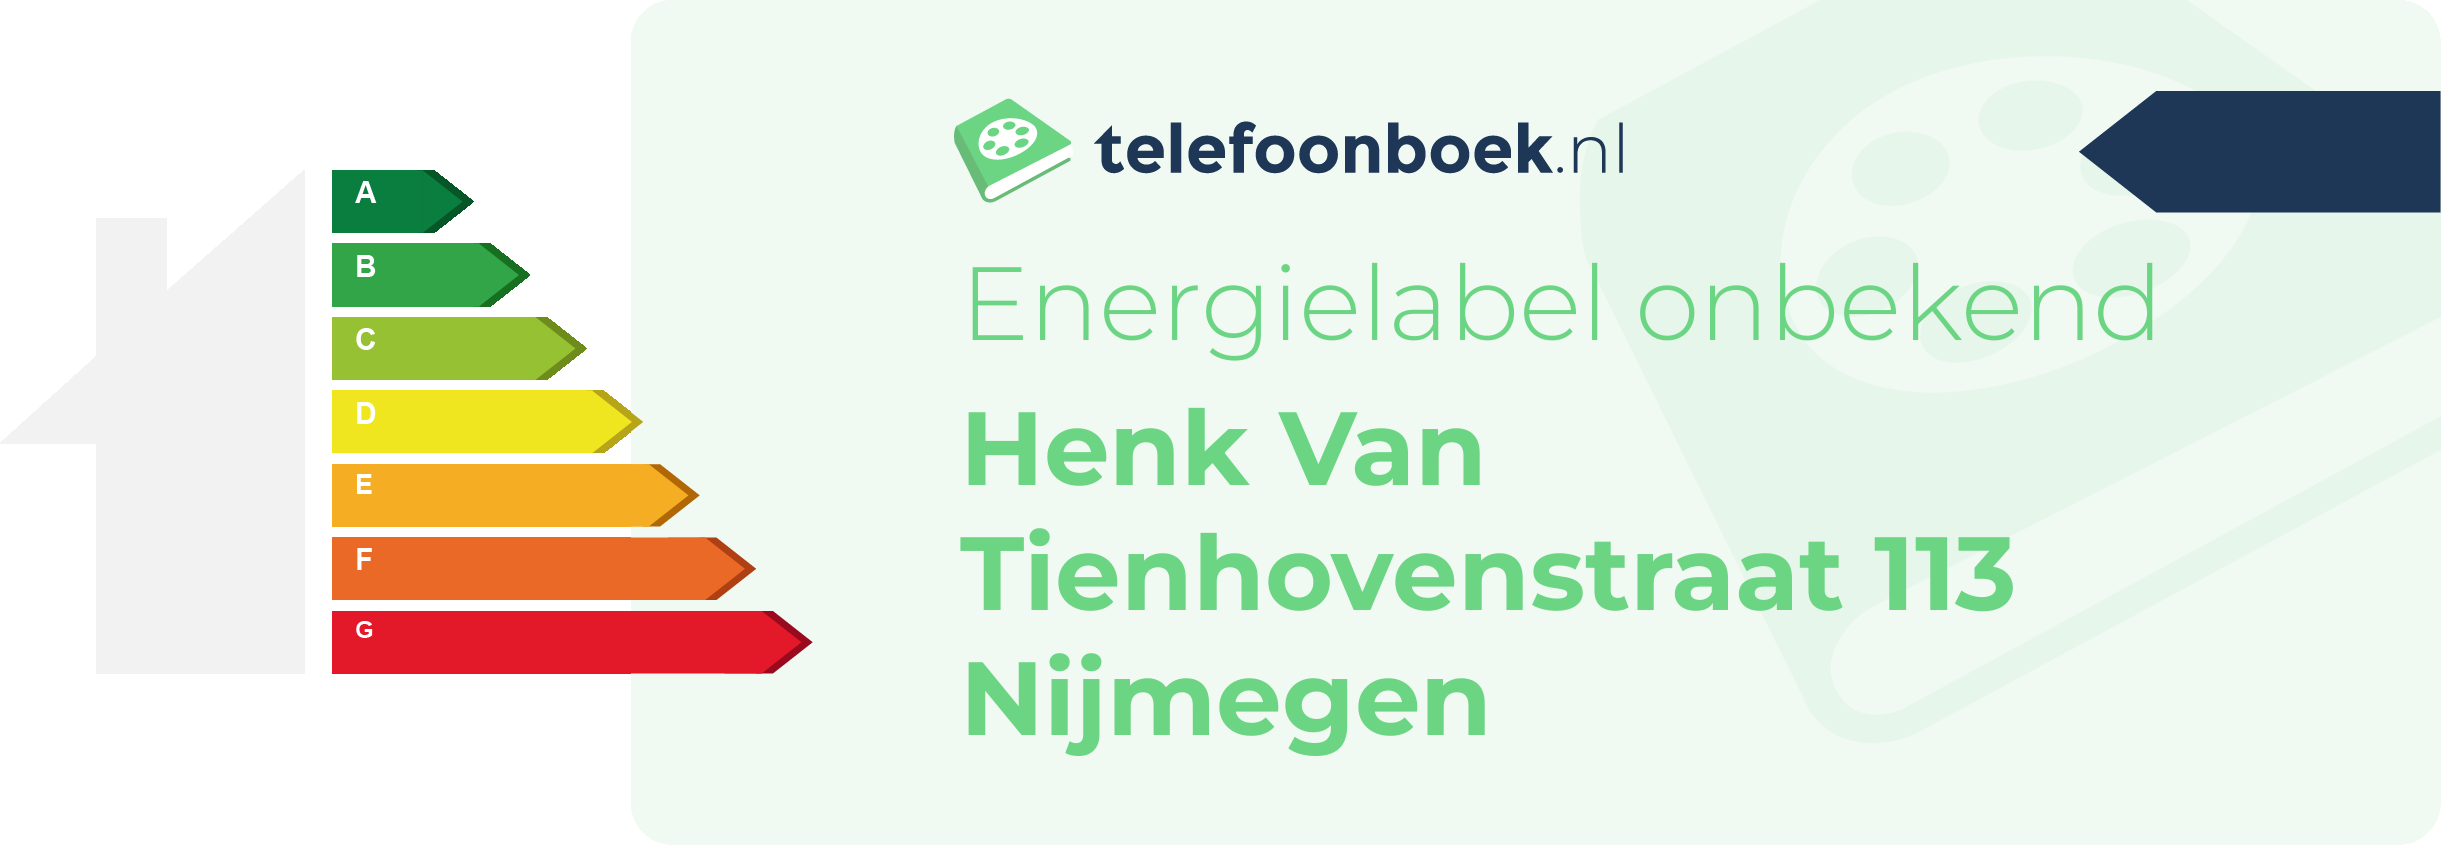 Energielabel Henk Van Tienhovenstraat 113 Nijmegen